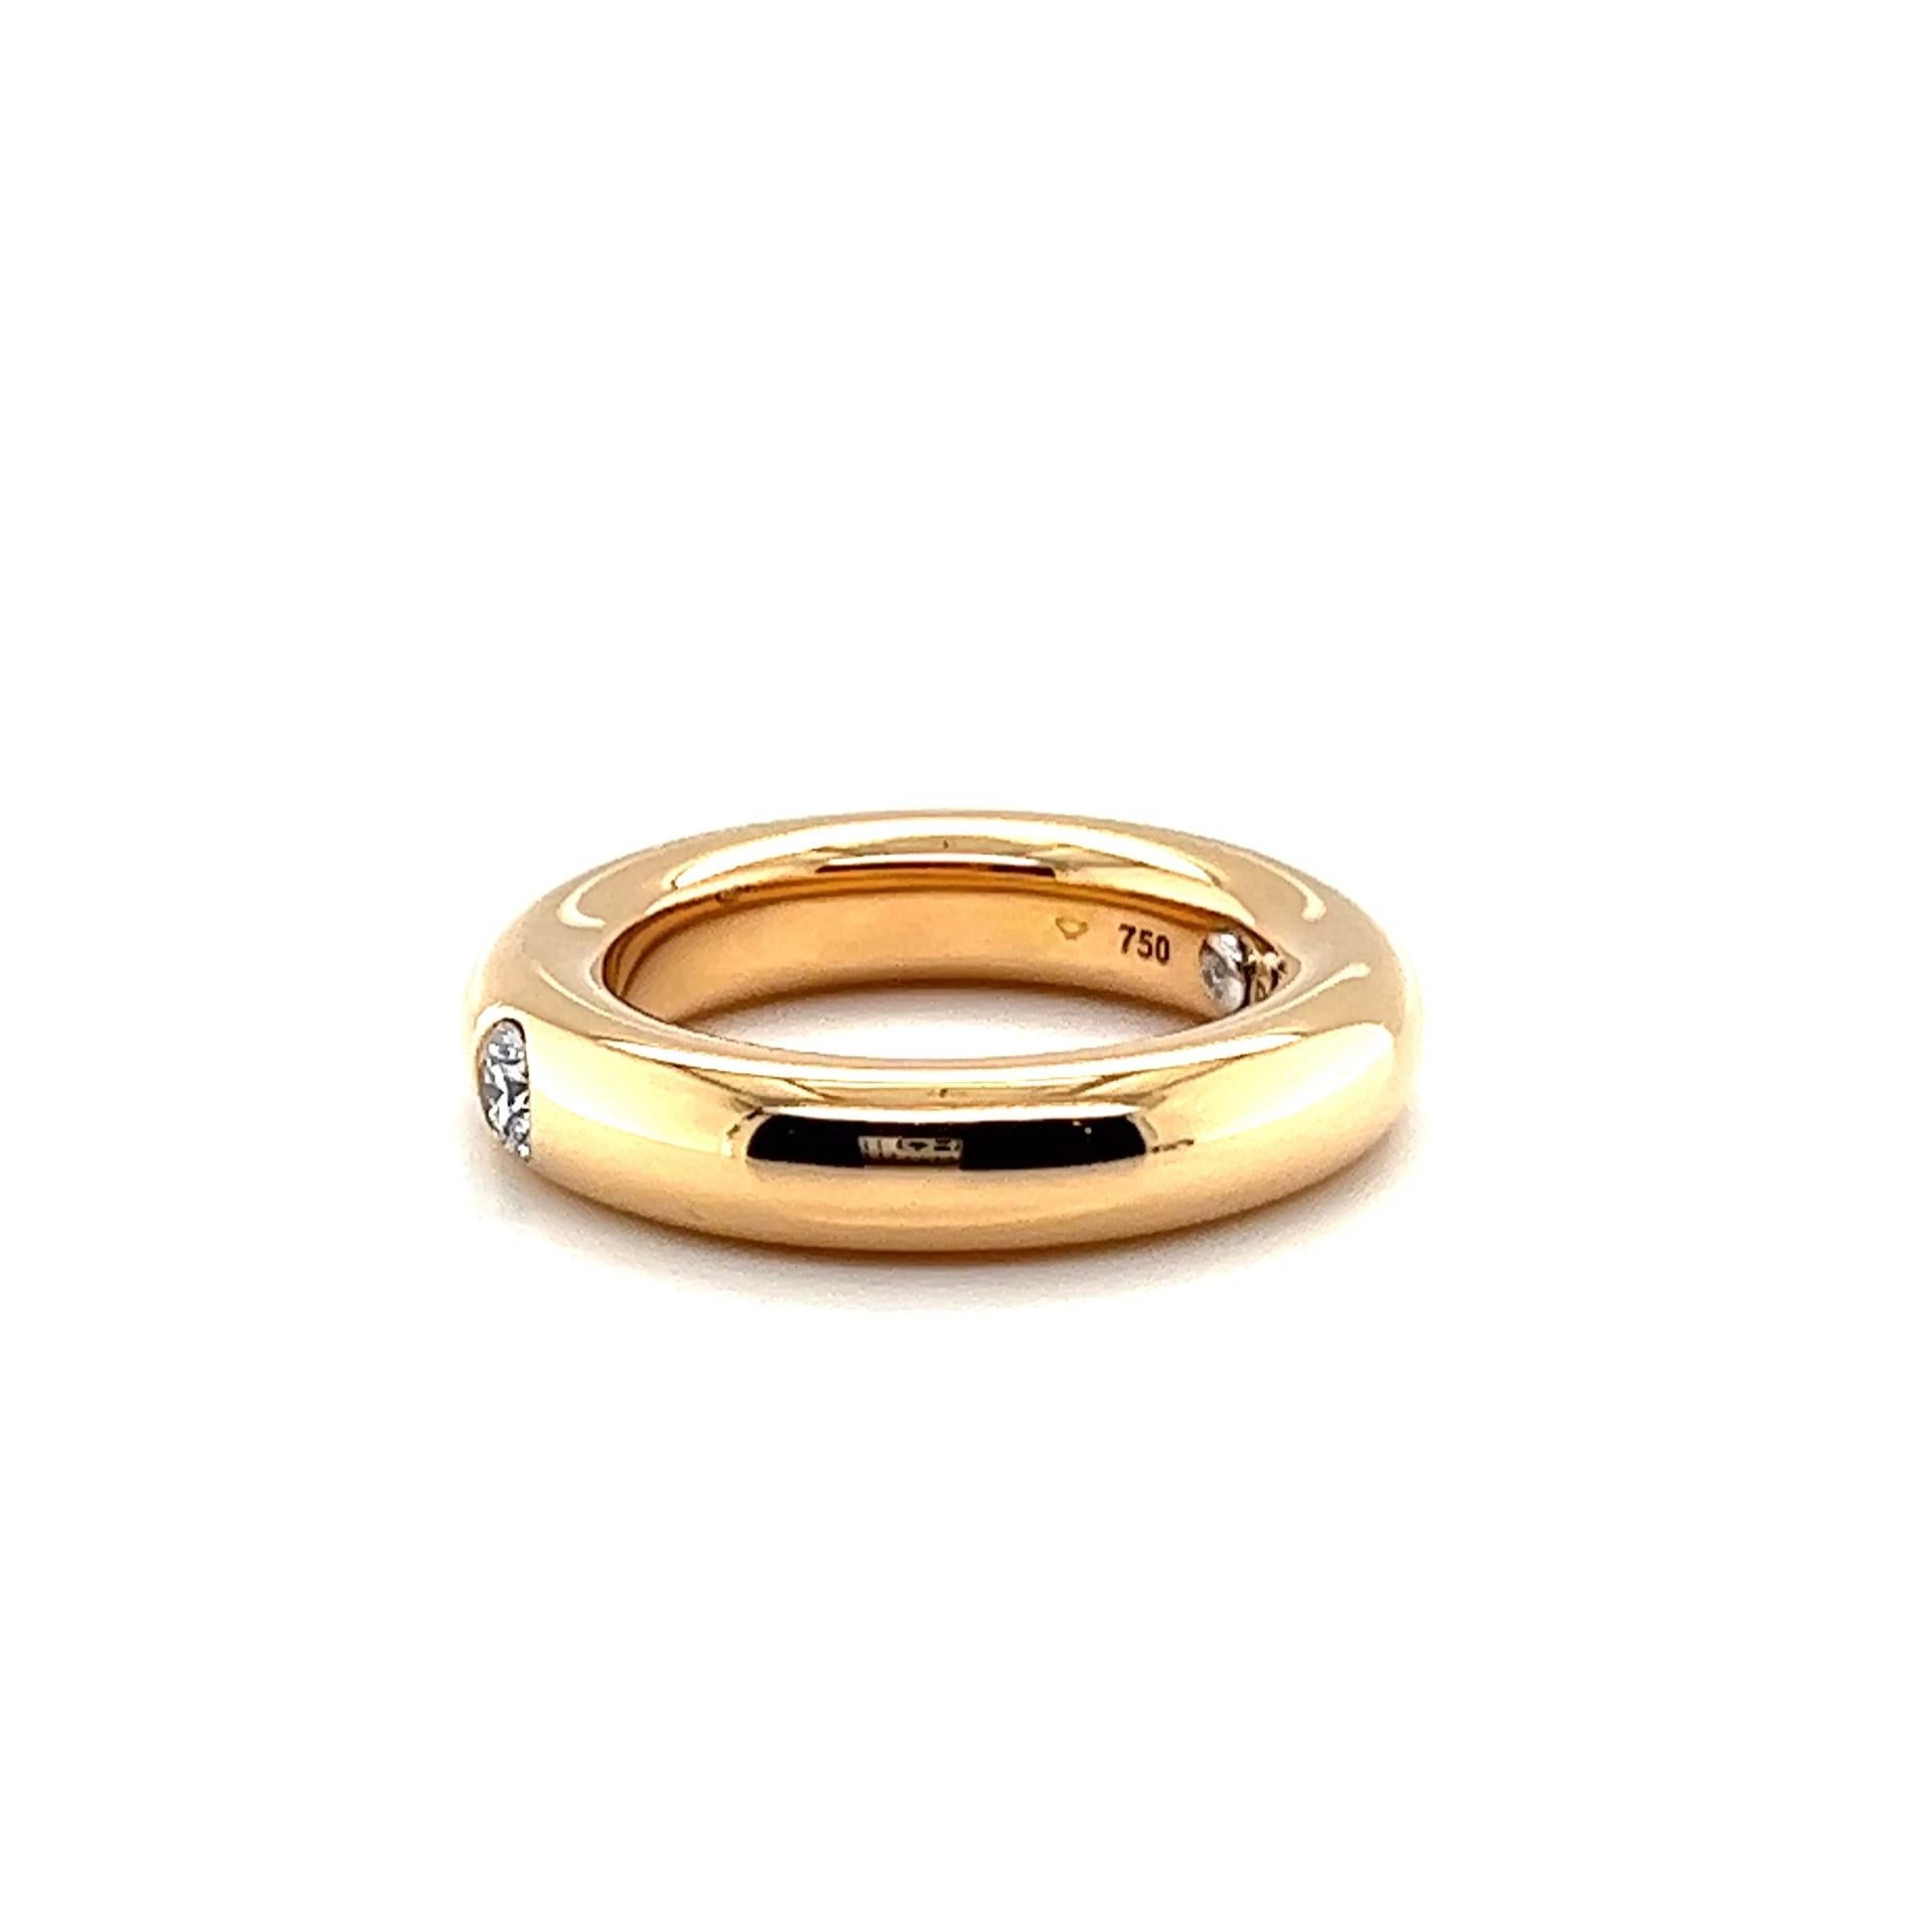 Une élégante bague à anneau avec des diamants en or rouge par le joaillier allemand Noor. La marque est célébrée pour son sens artistique exceptionnel et ses designs intemporels. Leur allure unique est due à des diamants soigneusement sélectionnés